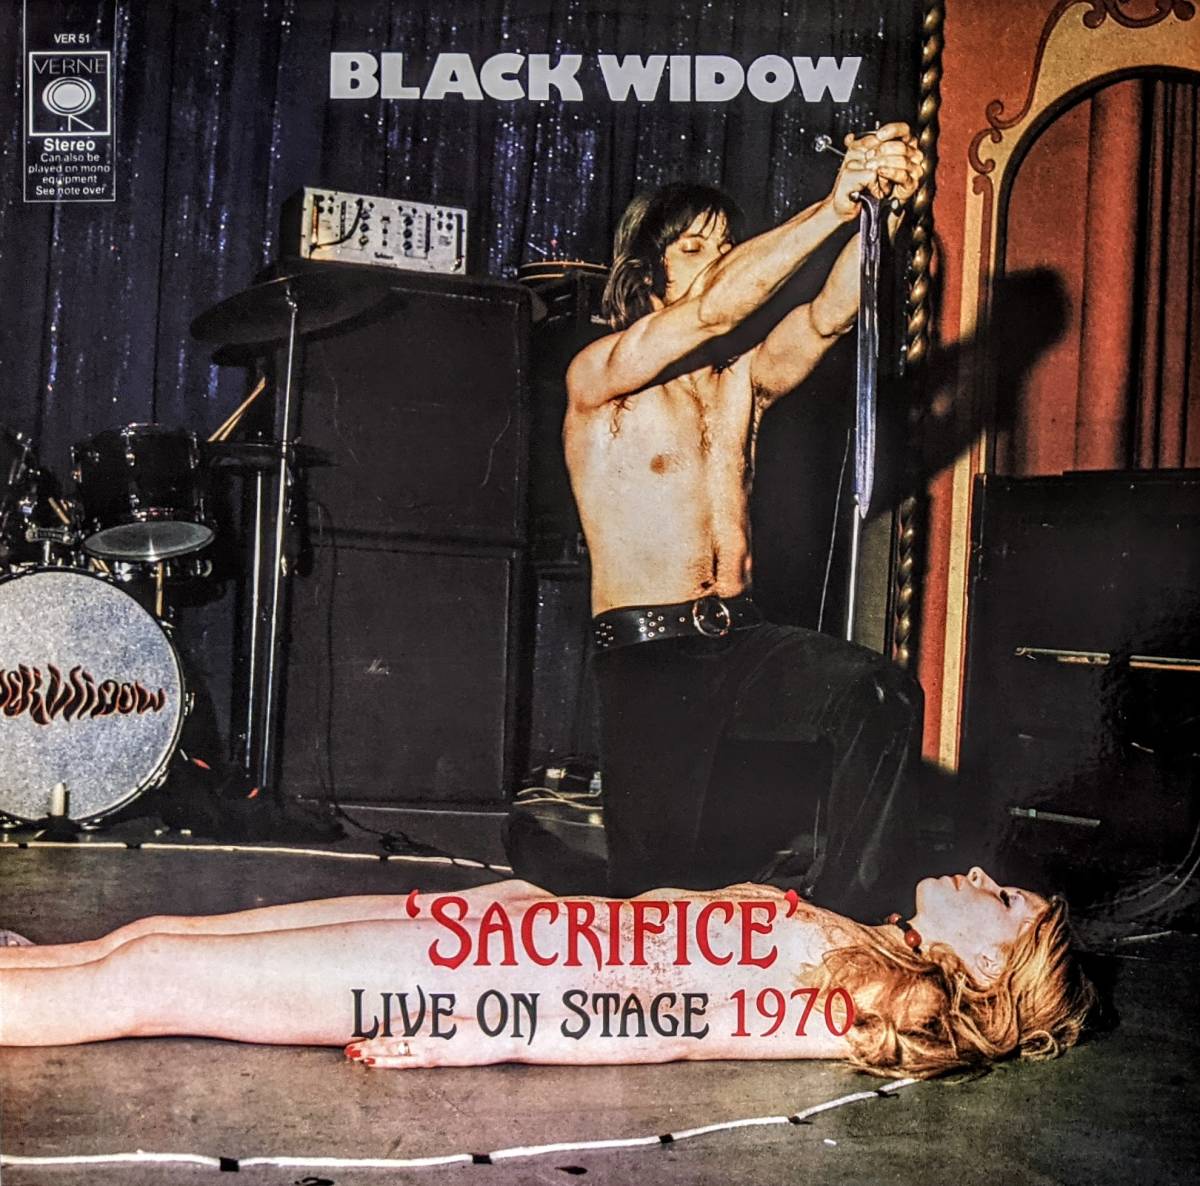 Black Widow ブラック ウィドウ - Sacrifice Live On Stage 1970 限定アナログ レコード